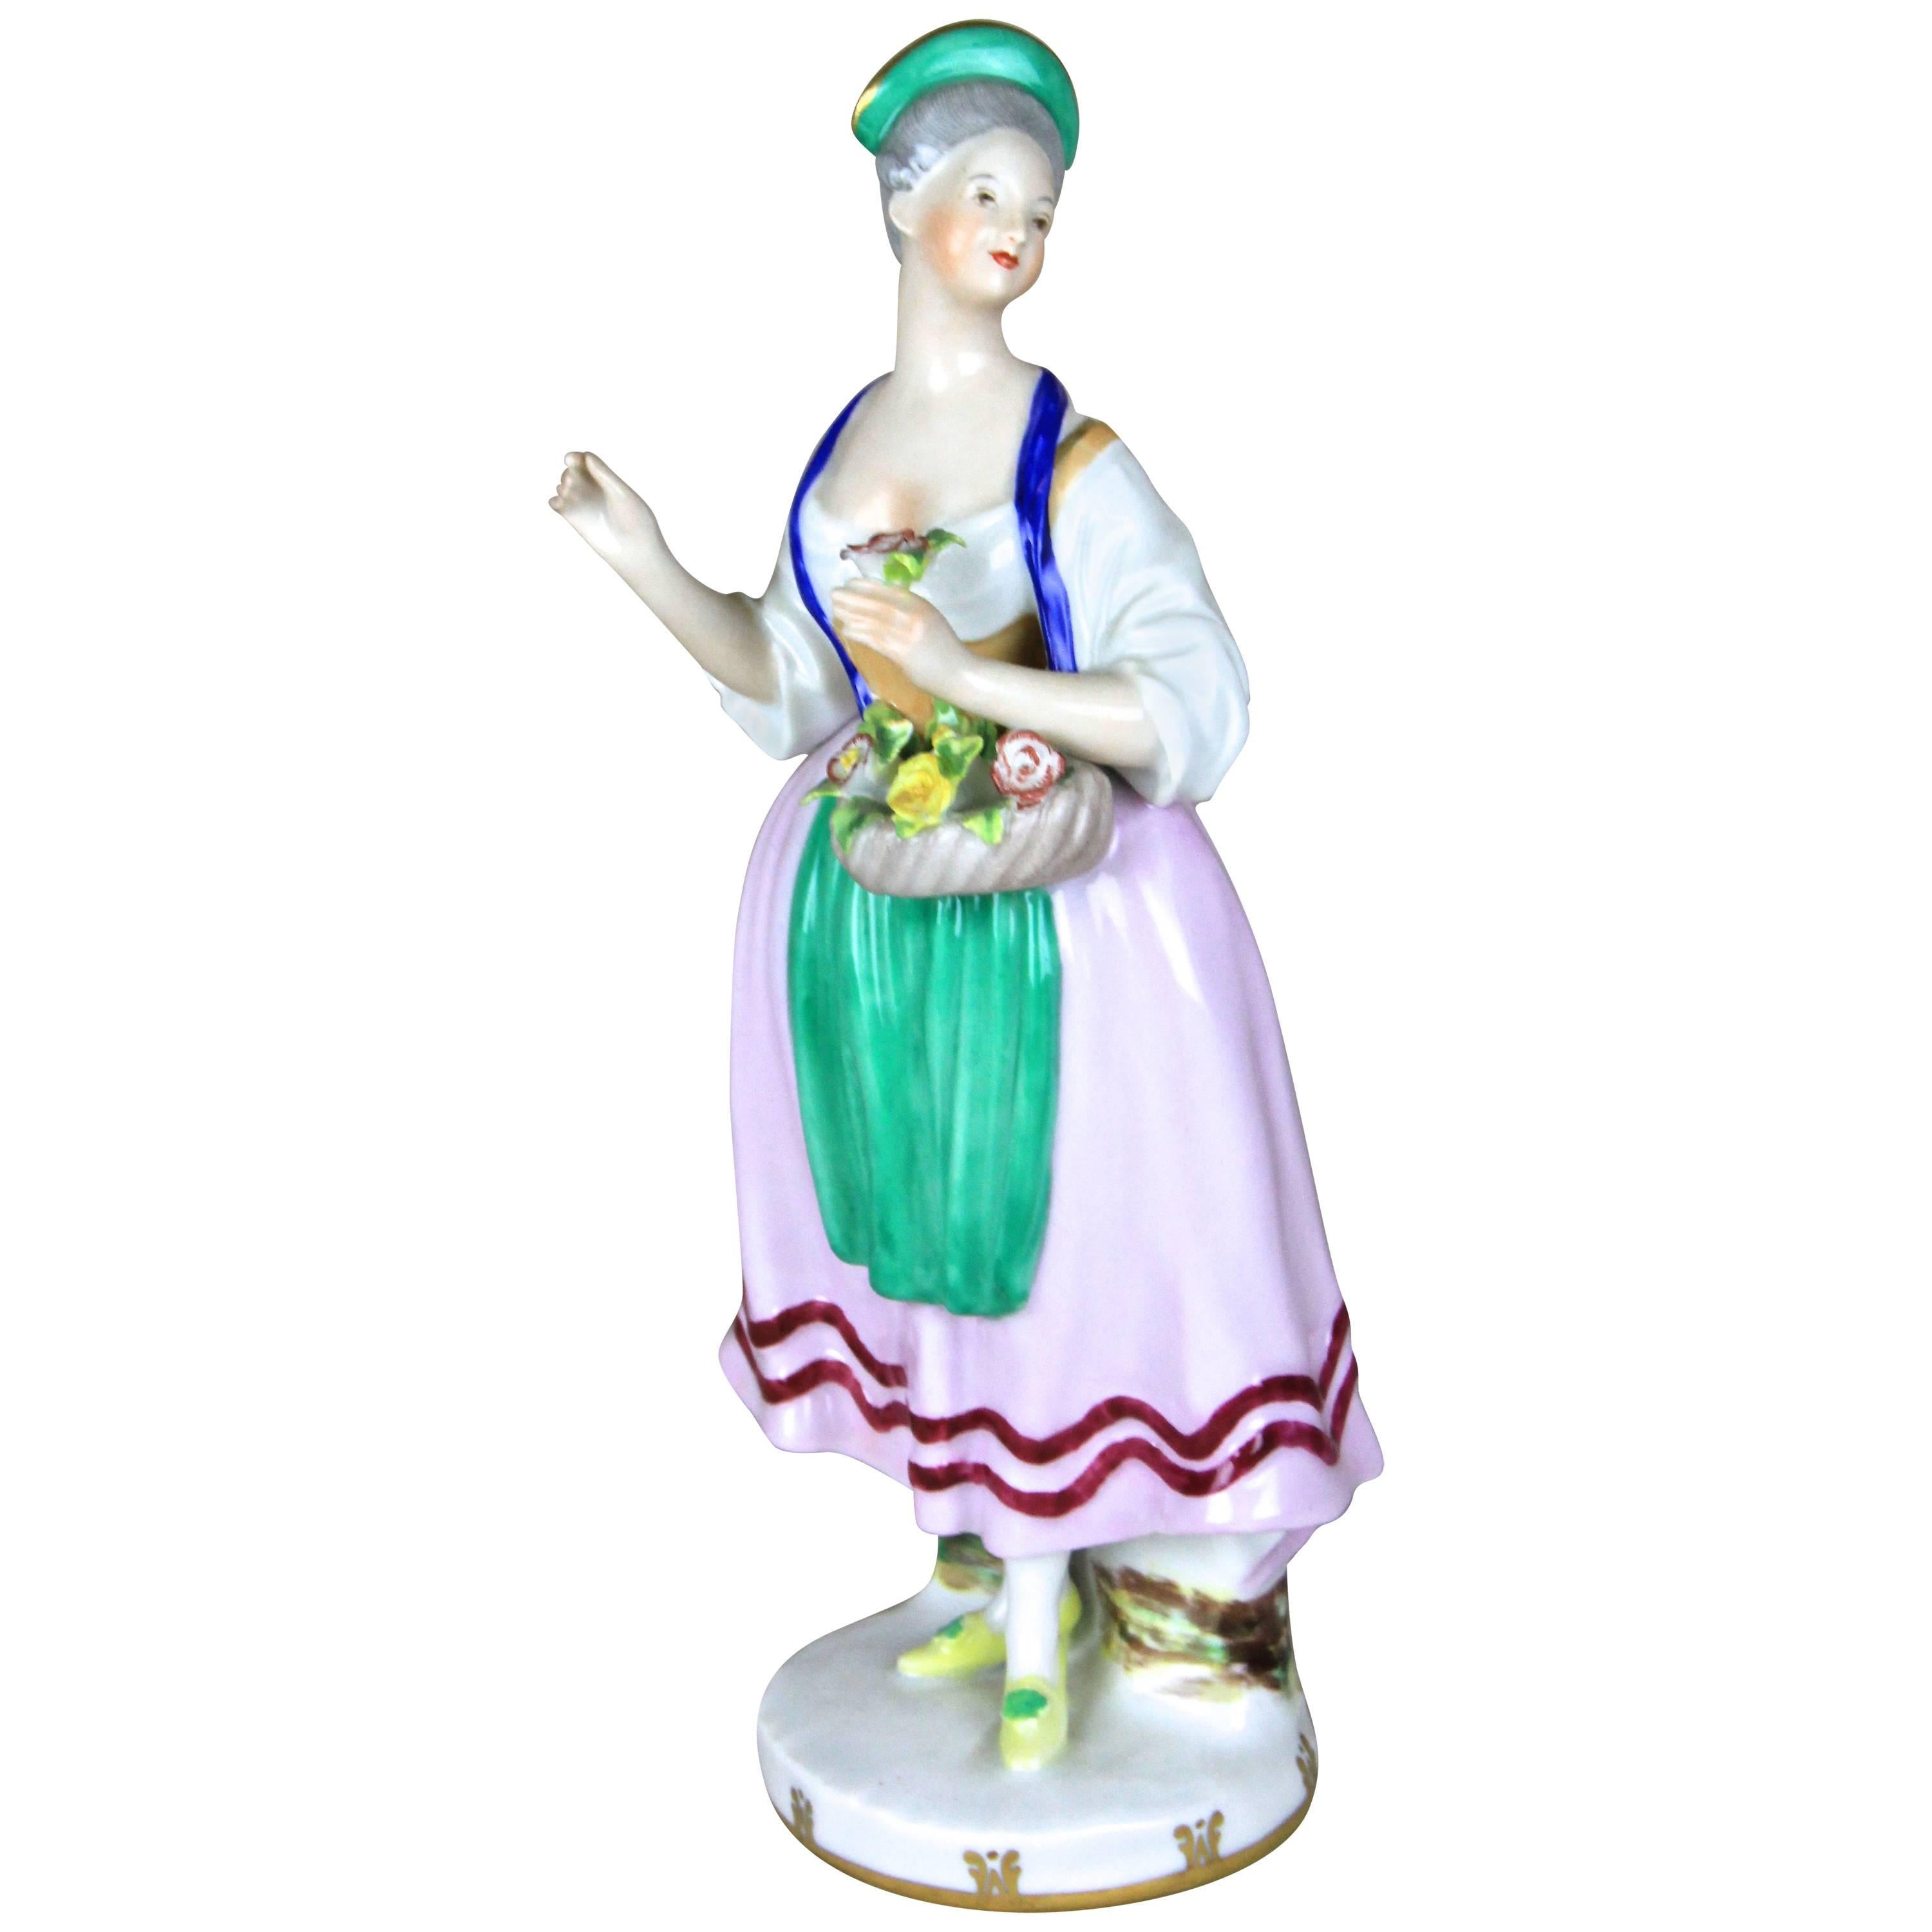 Porcelain Figurine "The Flower Woman" by Augarten Vienna, Austria, circa 1950